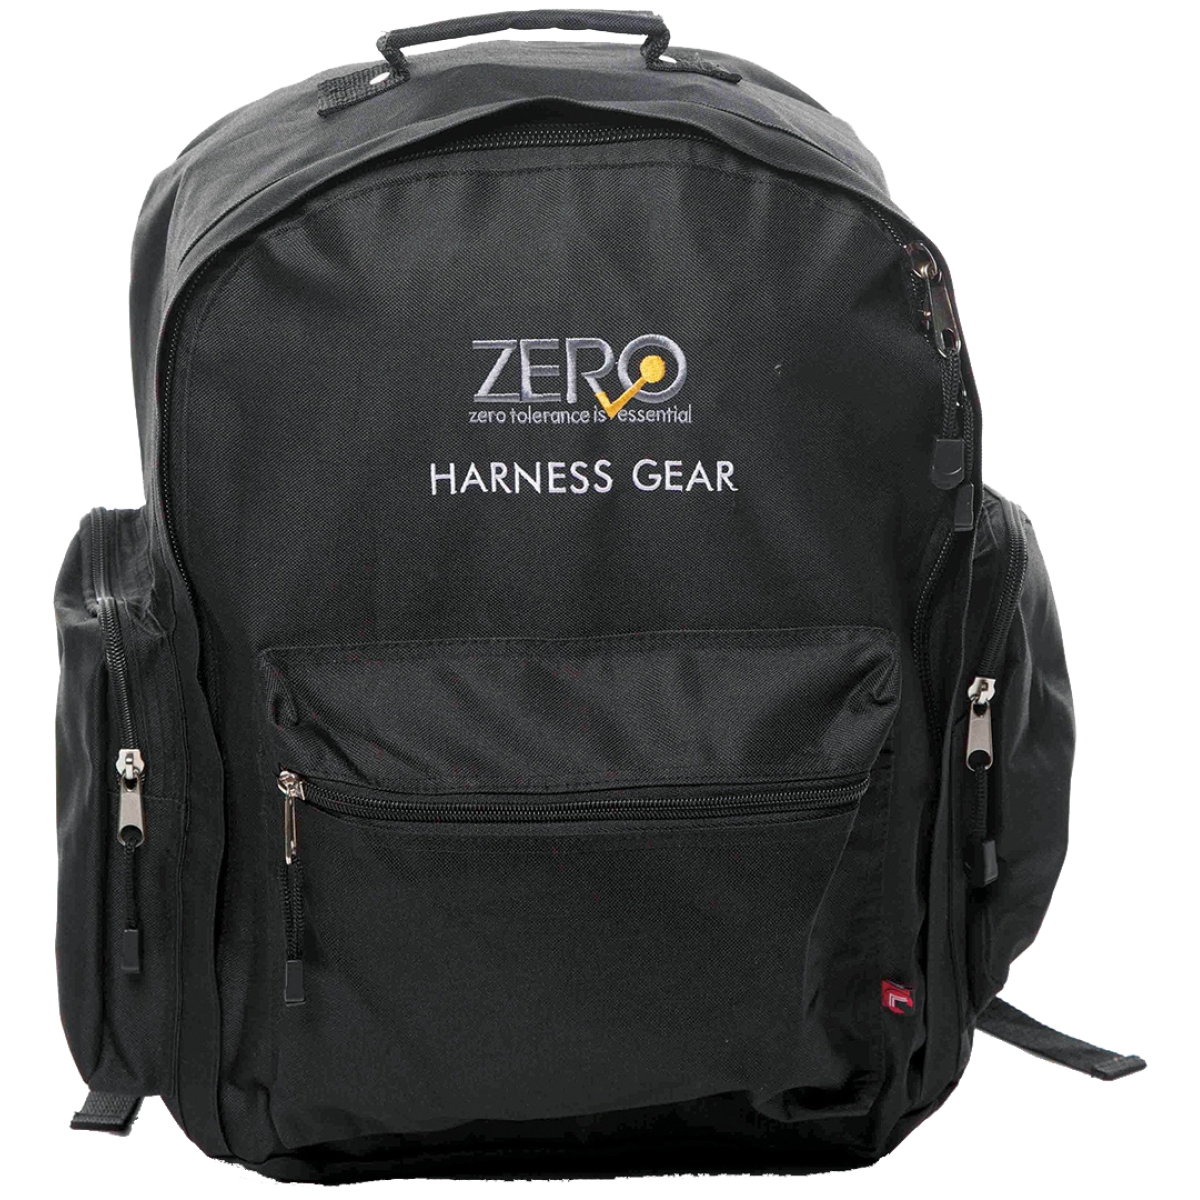 ZERO Harness Gear Backpack  ZBP